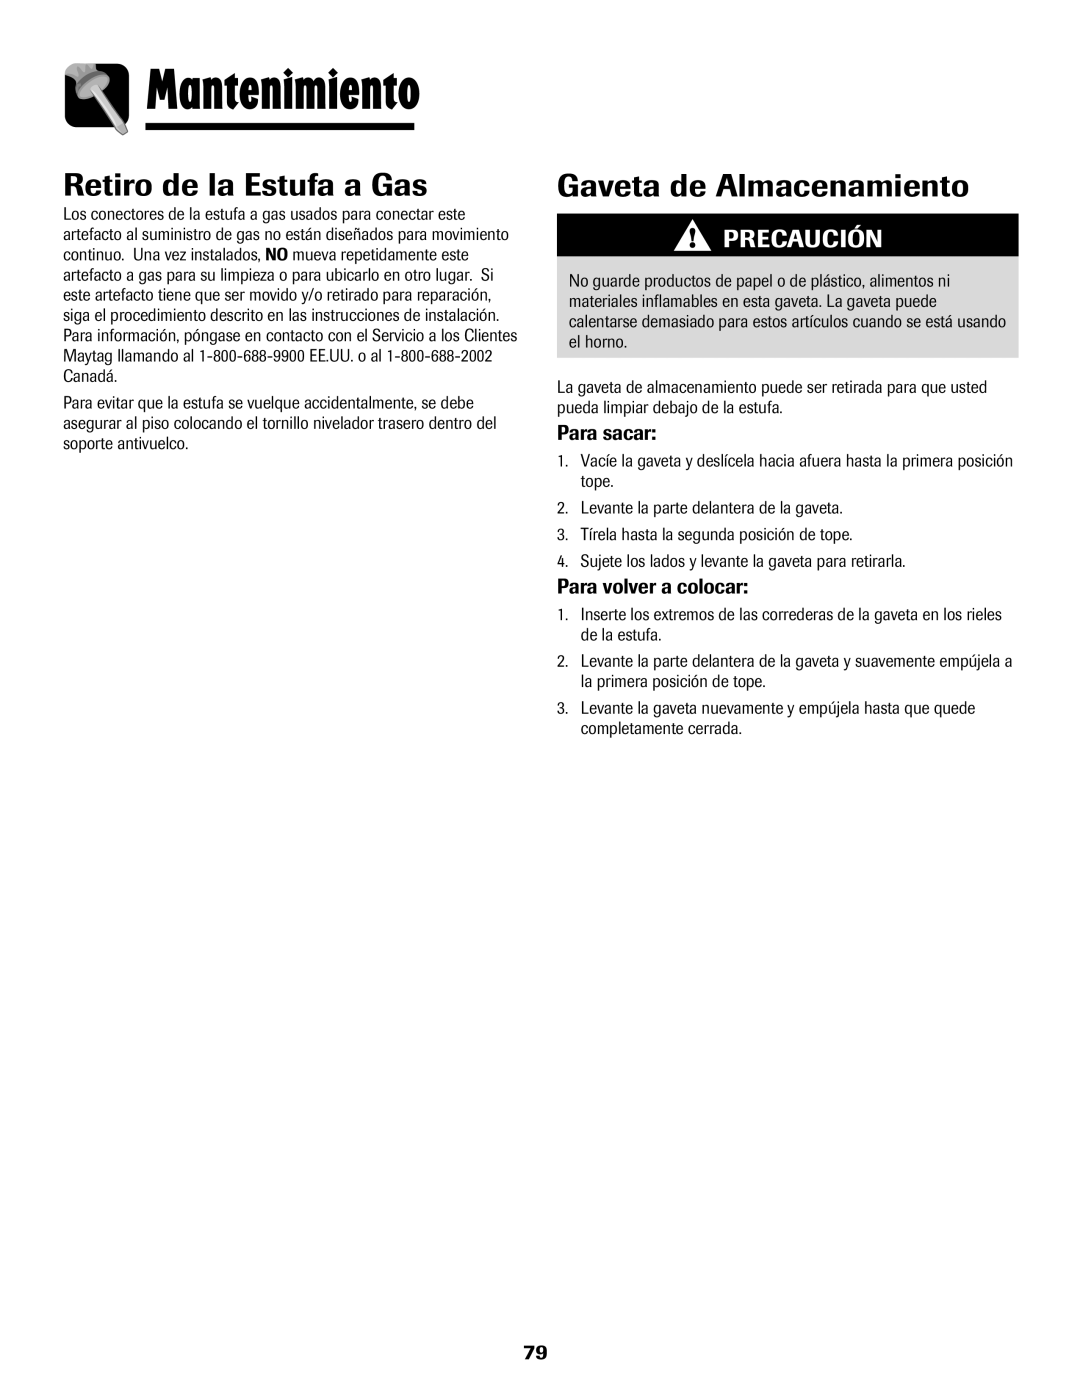 Maytag 700 manual Retiro de la Estufa a Gas, Gaveta de Almacenamiento, Para sacar, Para volver a colocar, Mantenimiento 